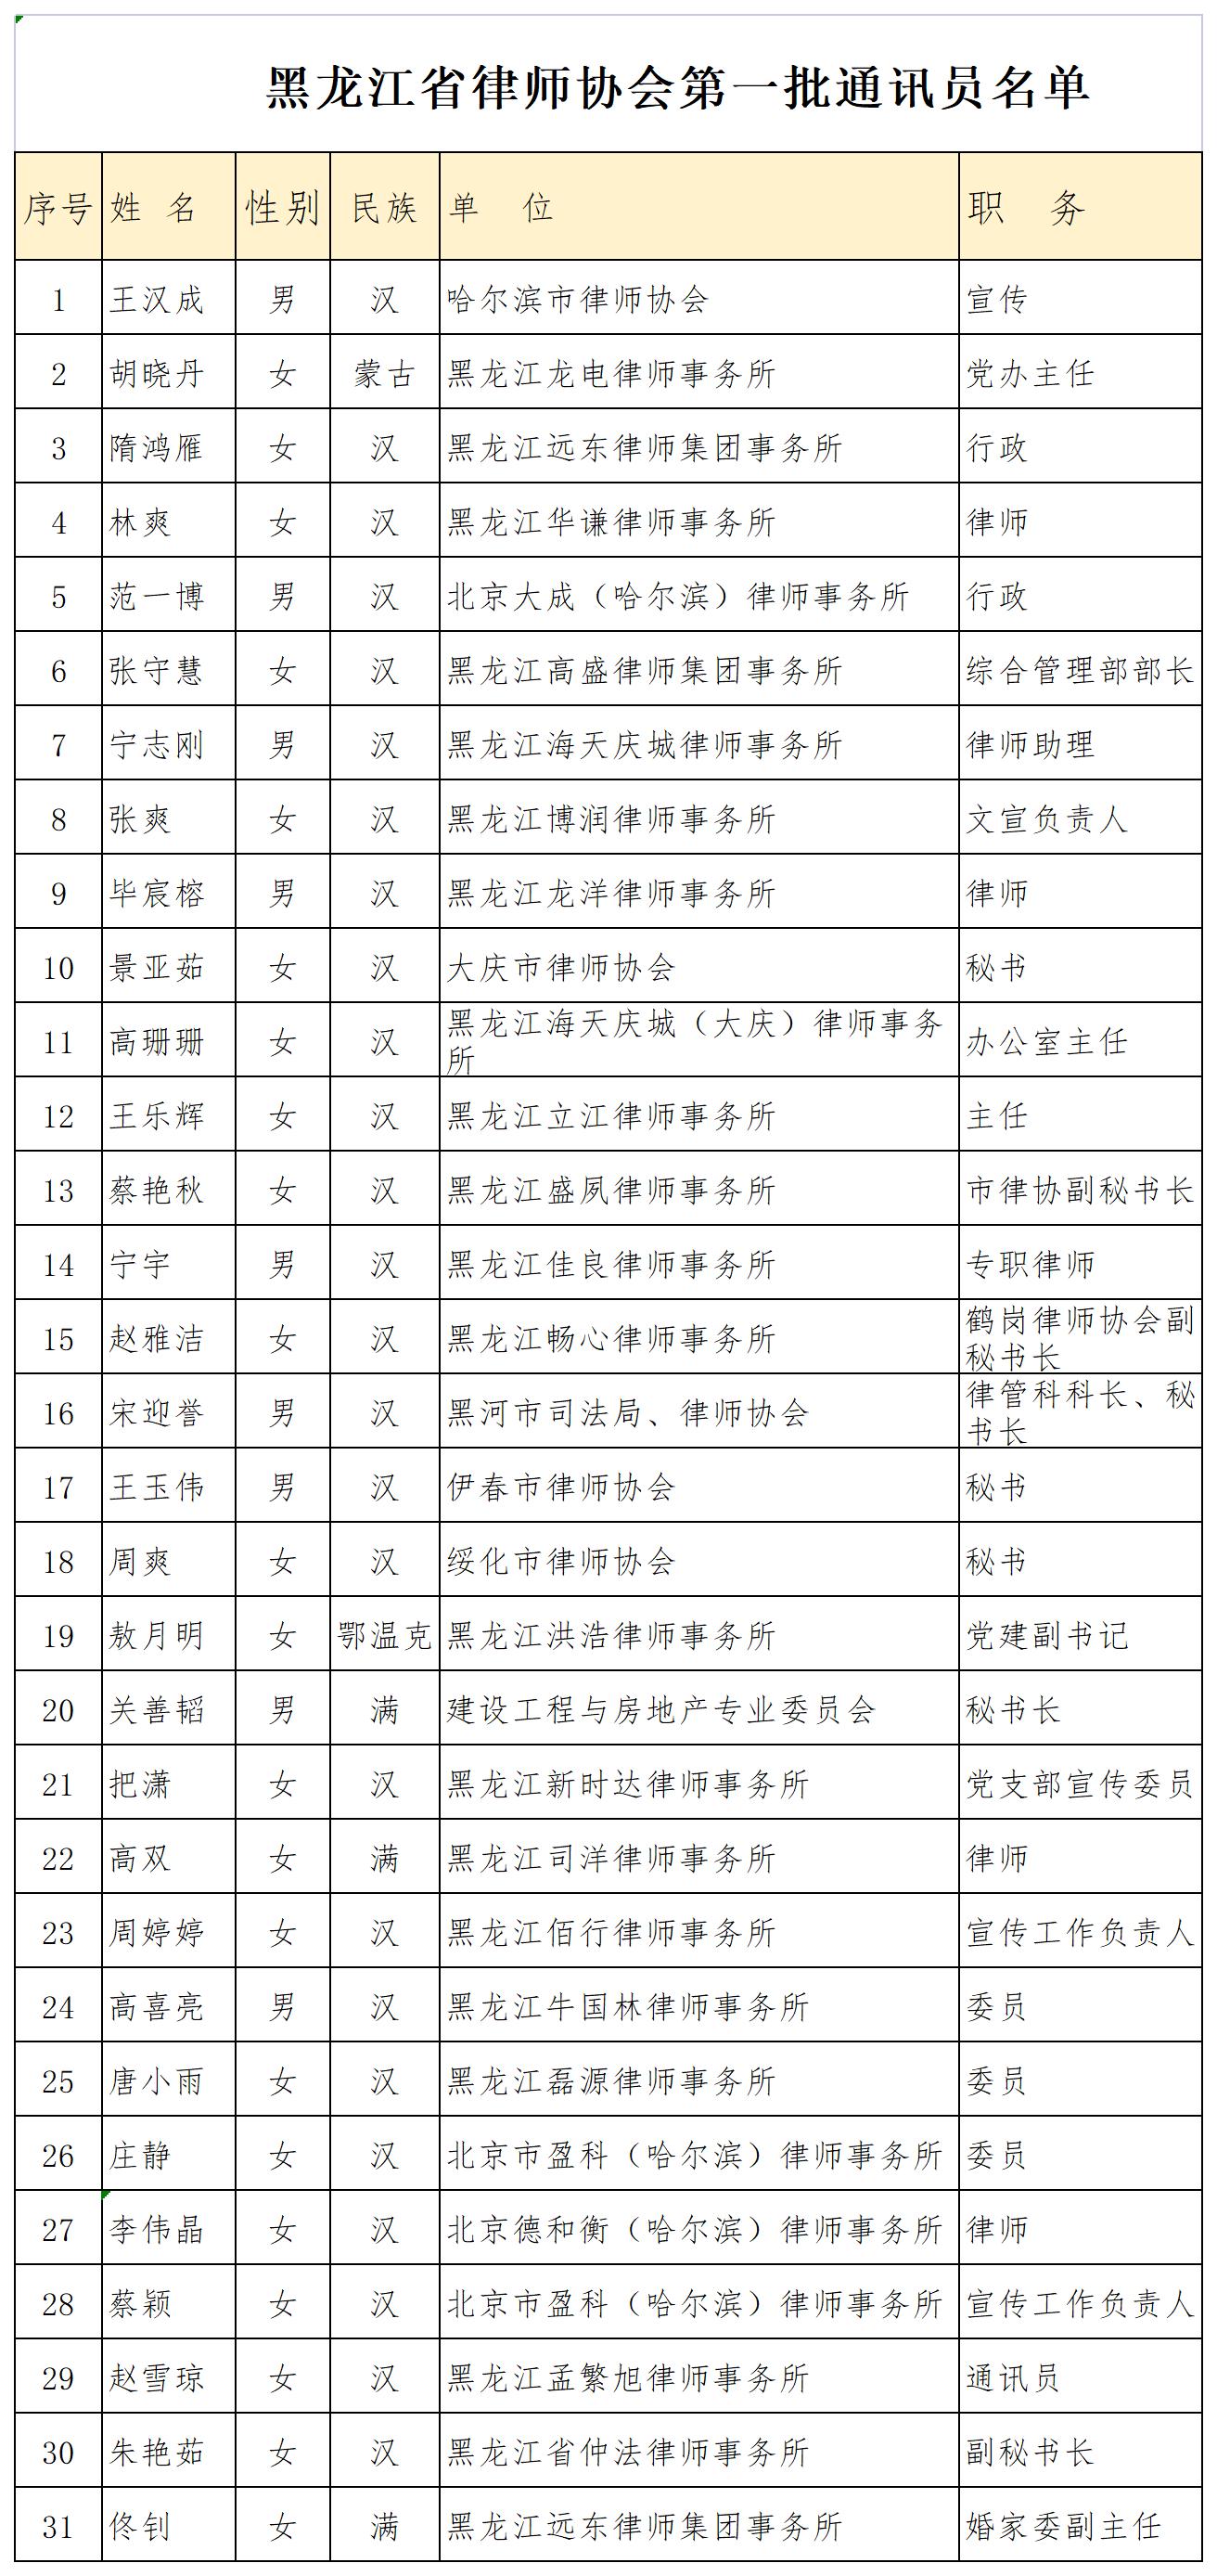 黑龙江省律师协会第一批通讯员名单.jpeg